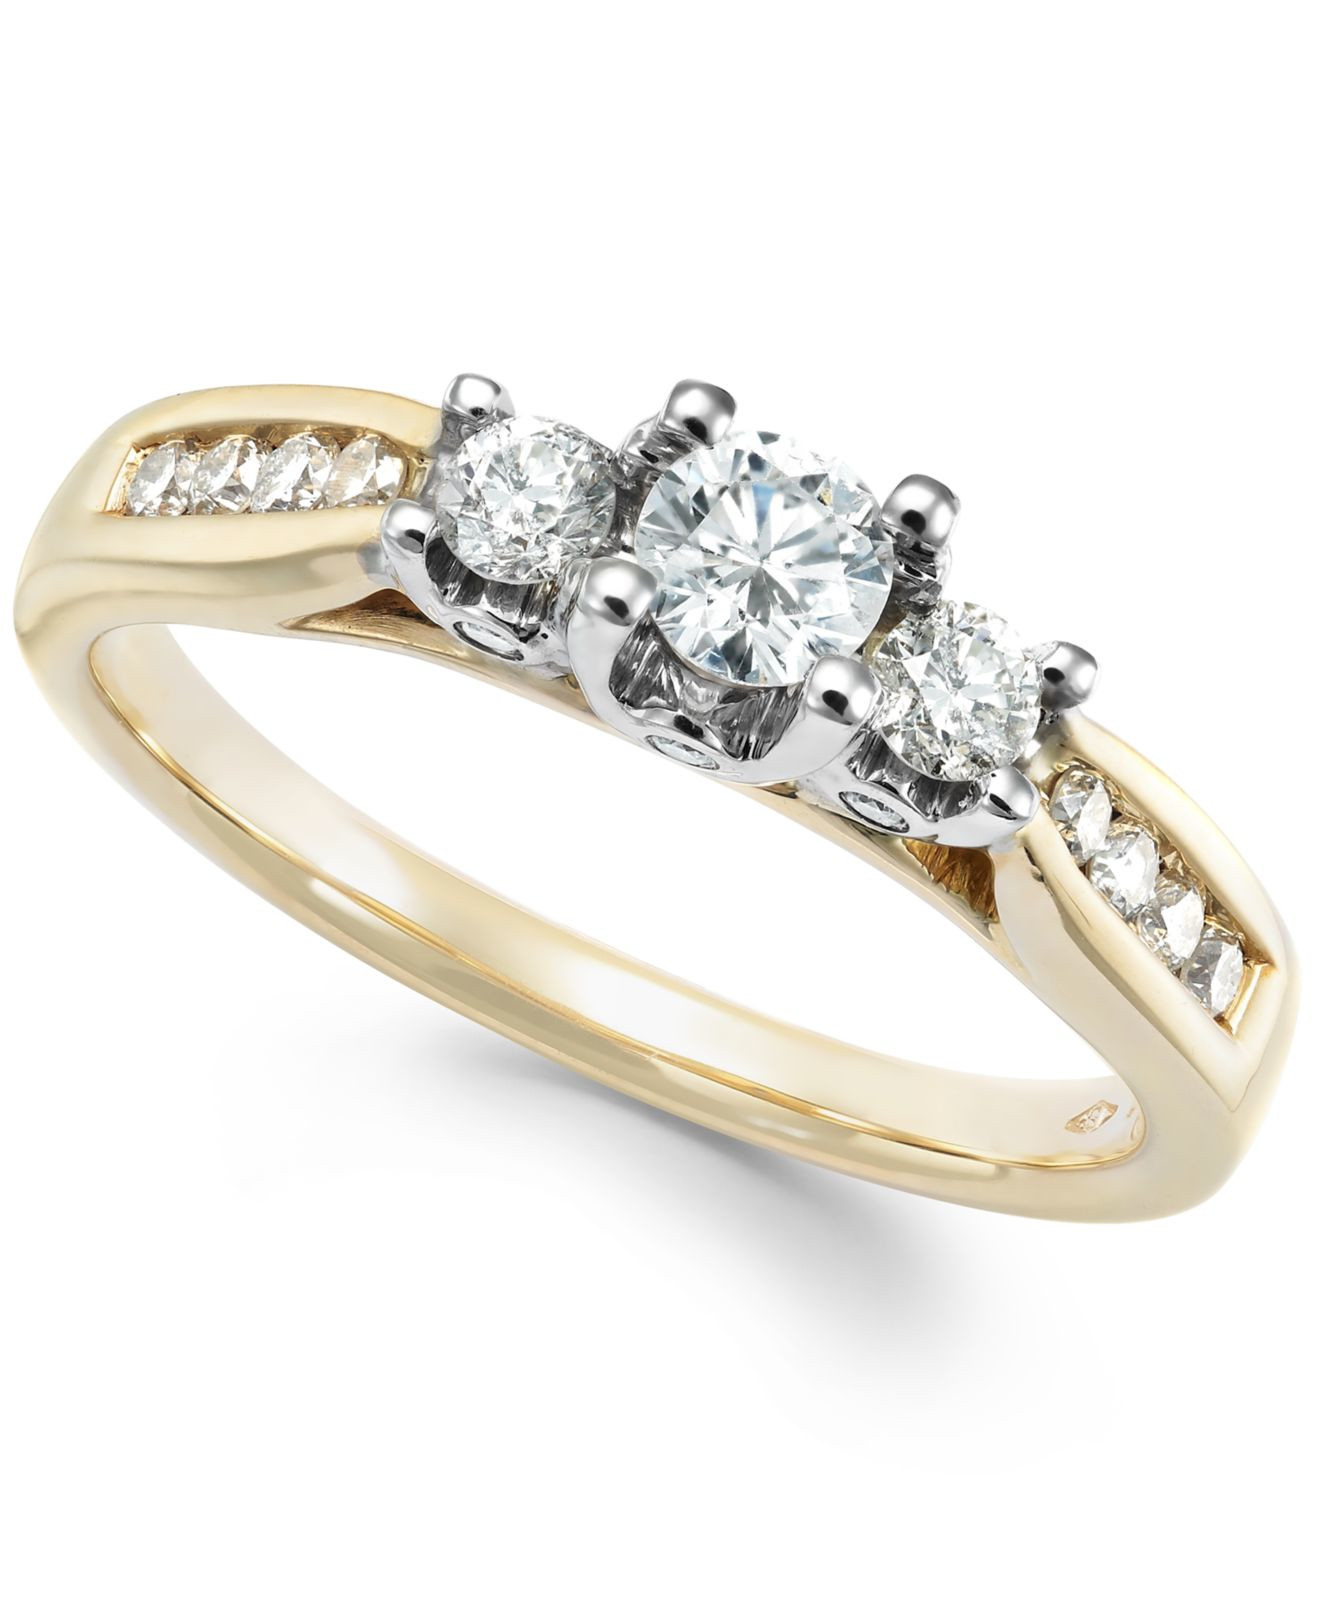 Macys Diamond Rings
 Macy s Us Three Stone Diamond Ring In 14K White Yellow